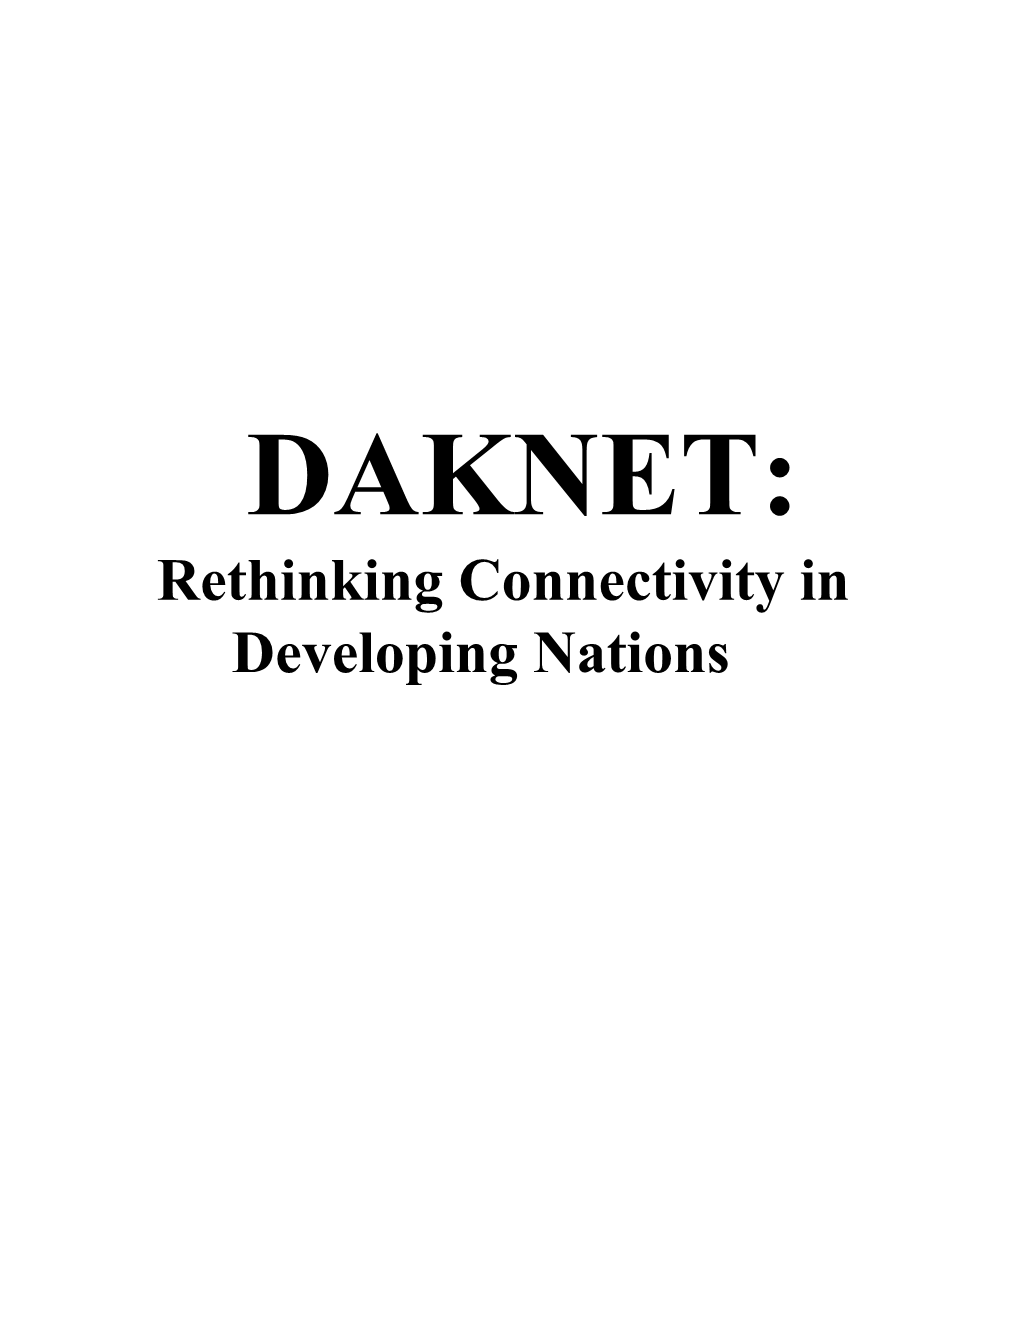 Seminar 2006 Daknet